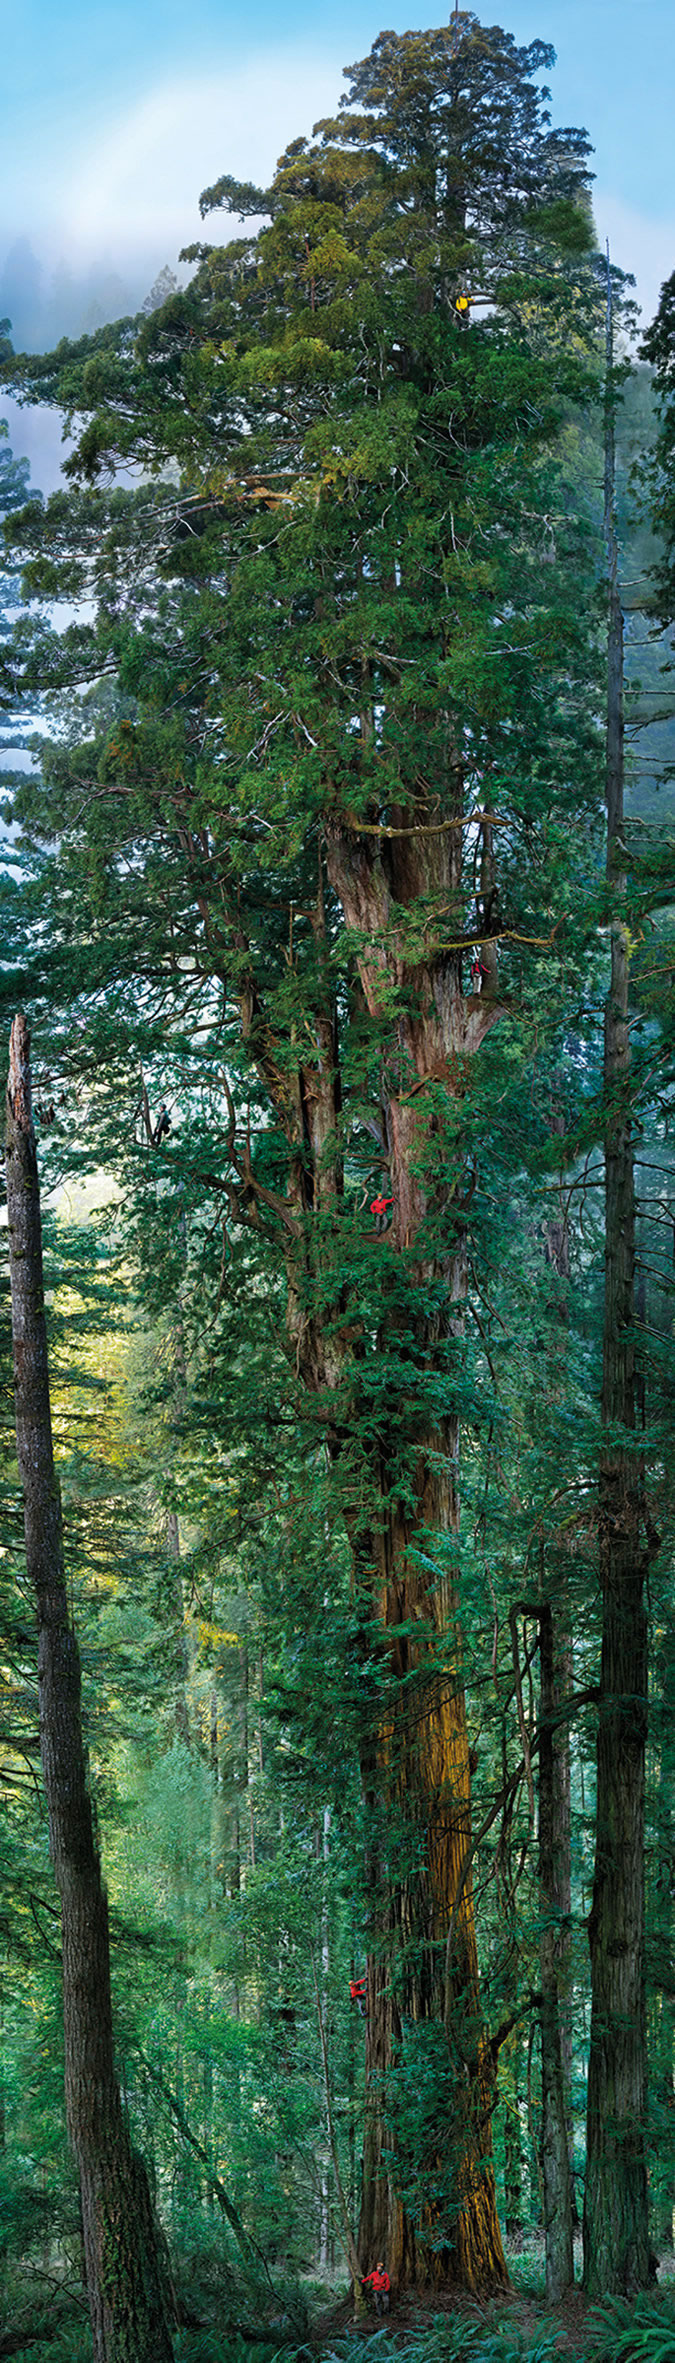 艾萨克·牛顿曾解释高大的树木如红杉是如何战胜地心引力并将水分运送到其叶子中